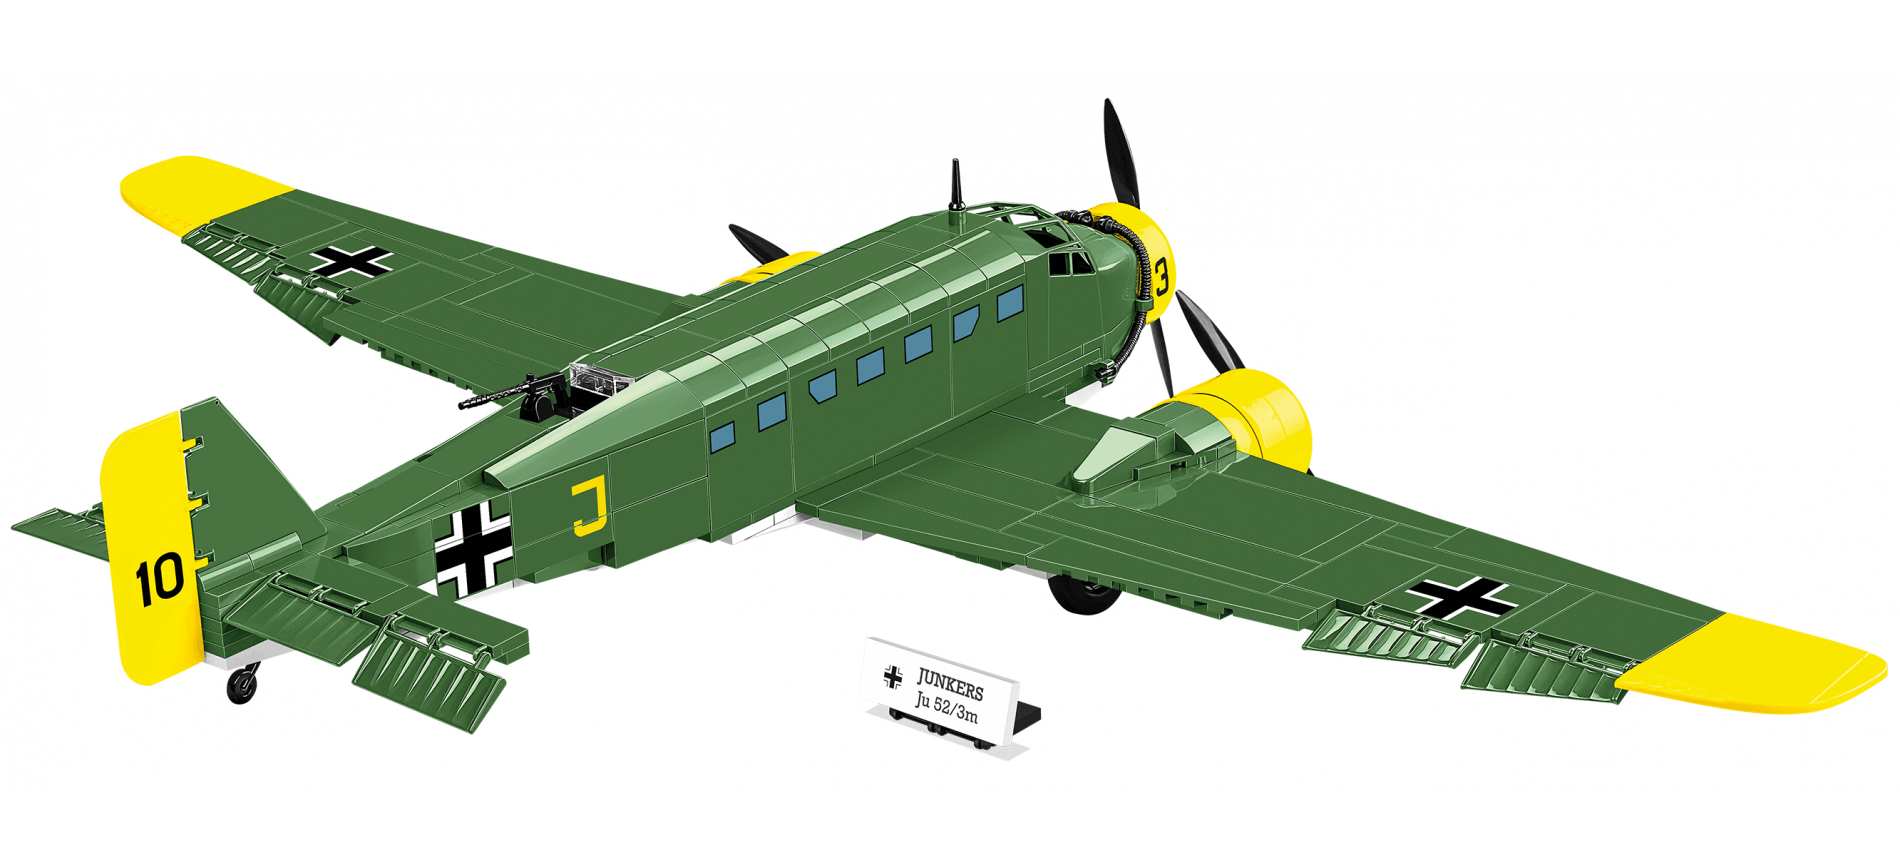 Cobi - Avion Junkers Ju52 / 3m Suisse - 542 pièces